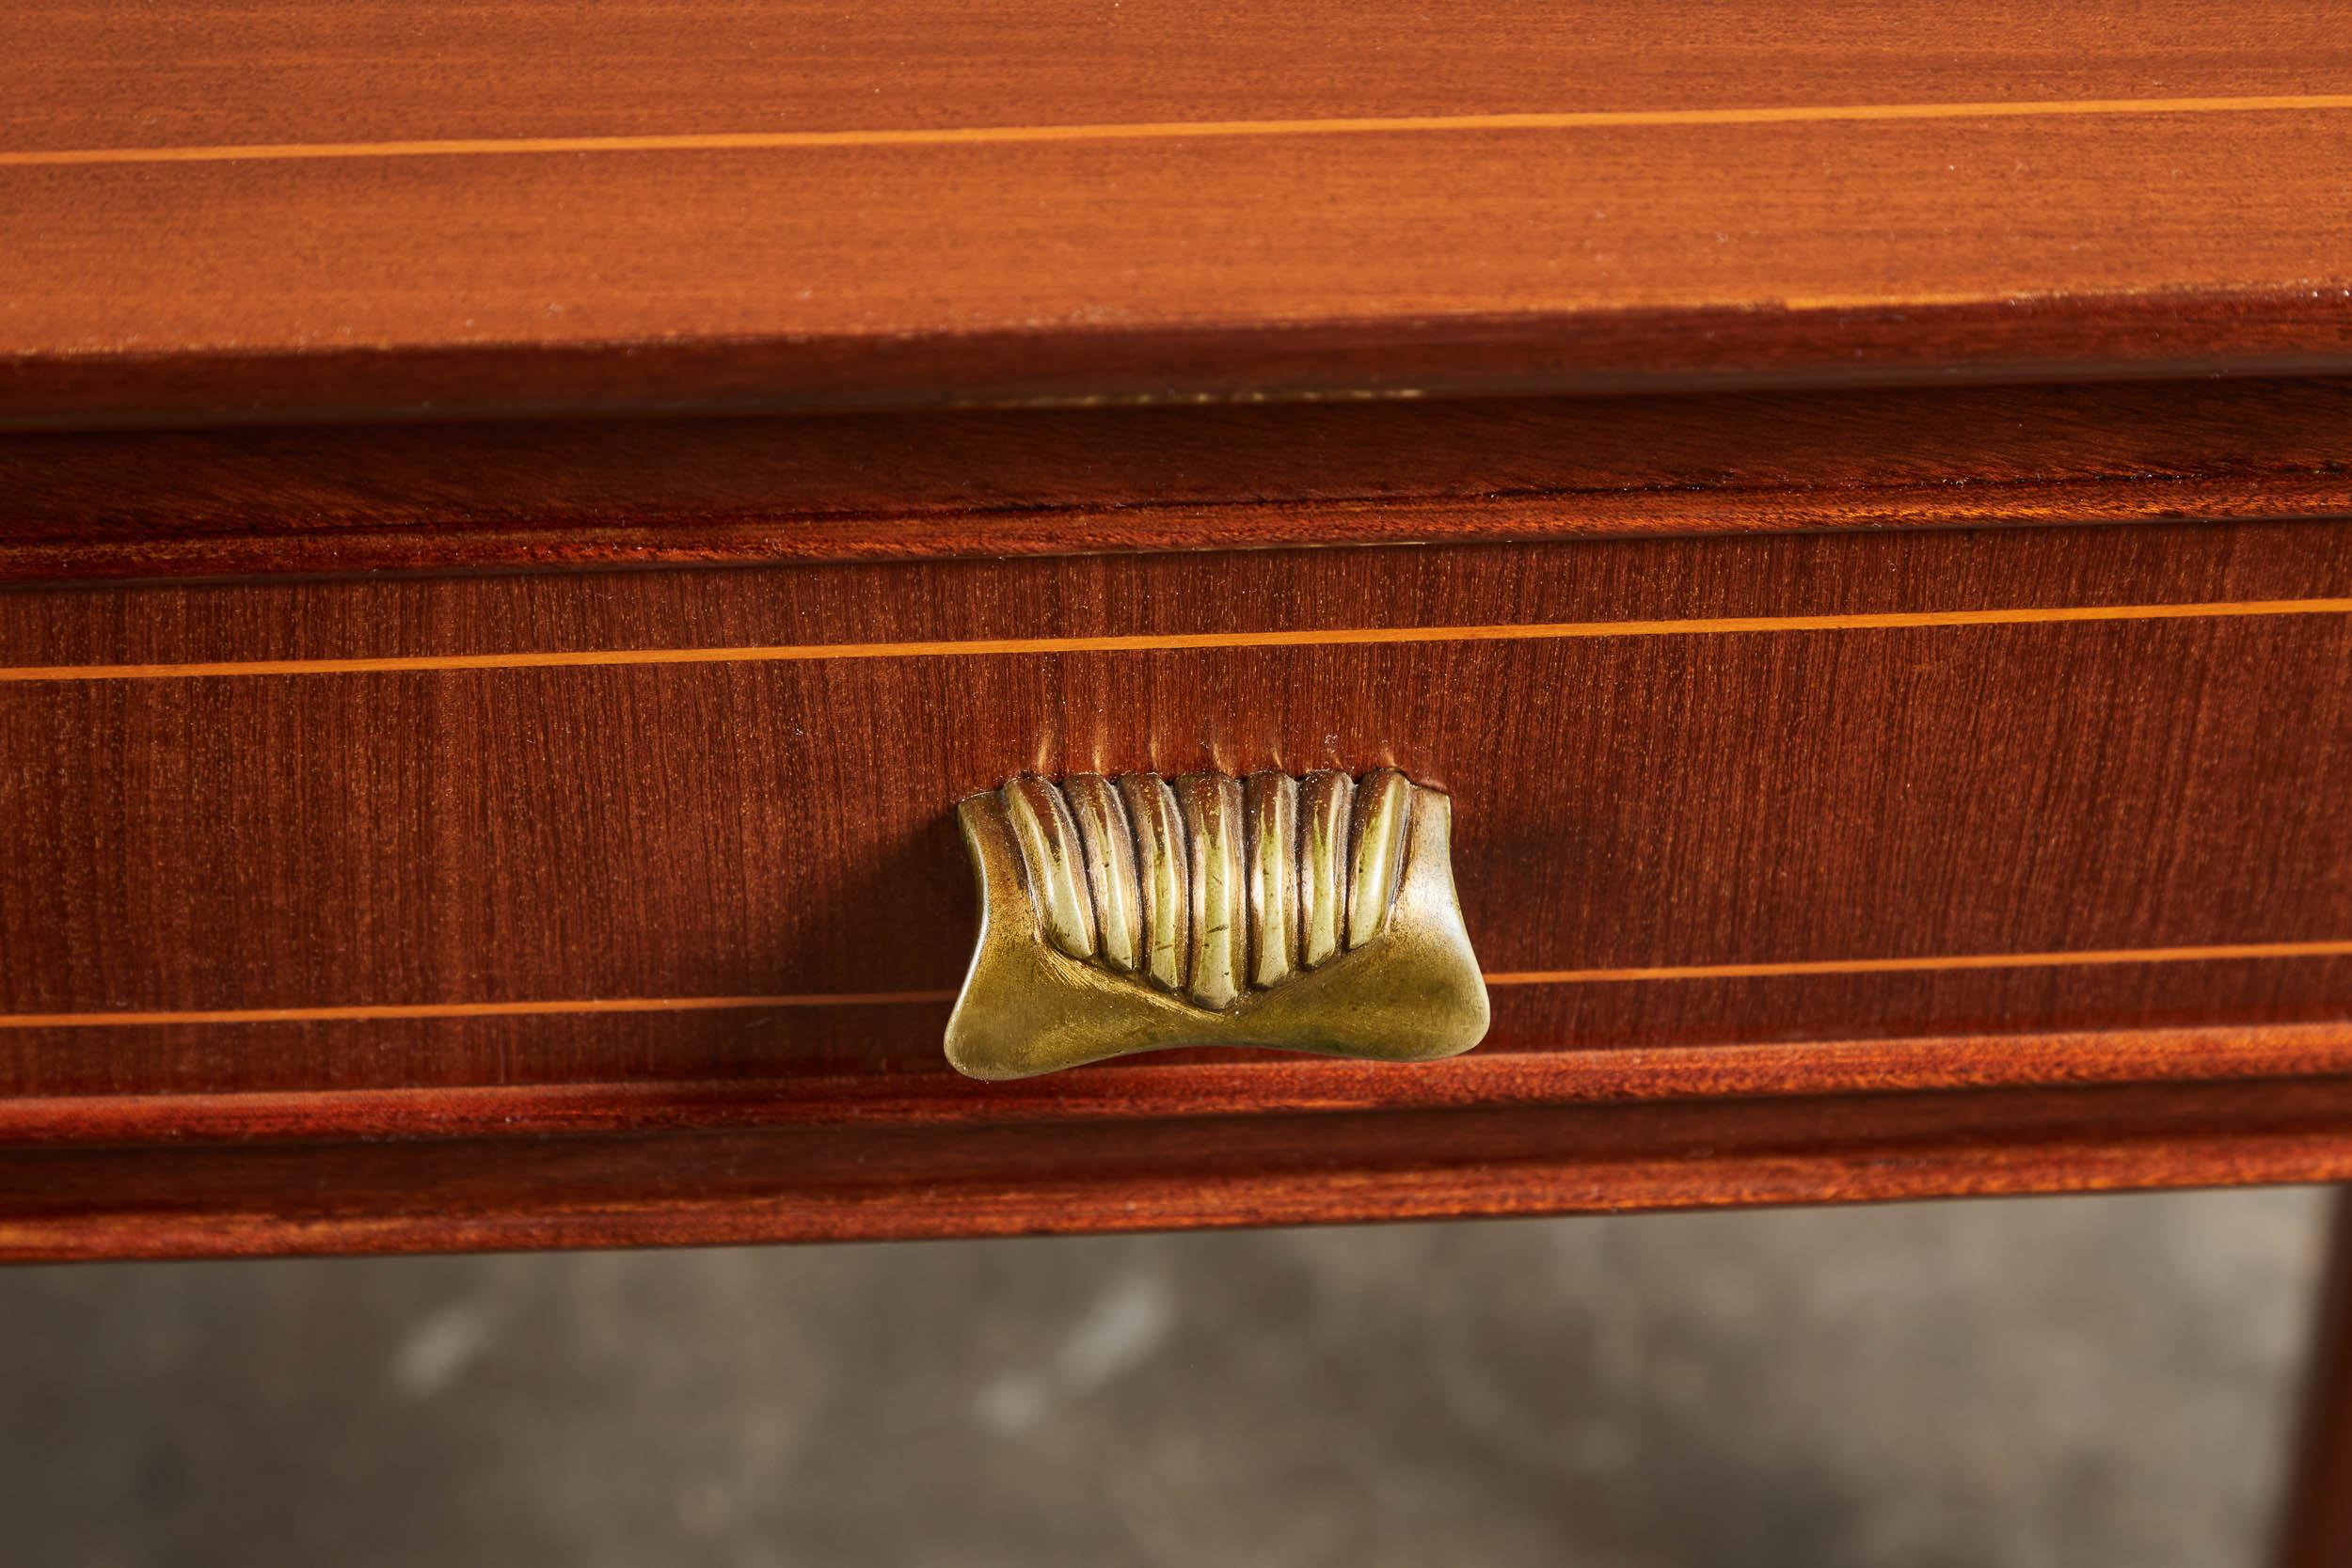 Console italienne des années 1940 à trois tiroirs de style Paolo Buffa. Les pieds fins et les incrustations délicates rendent cette pièce à la fois élégante et discrète. Quincaillerie de couleur dorée et façade légèrement incurvée. Petite